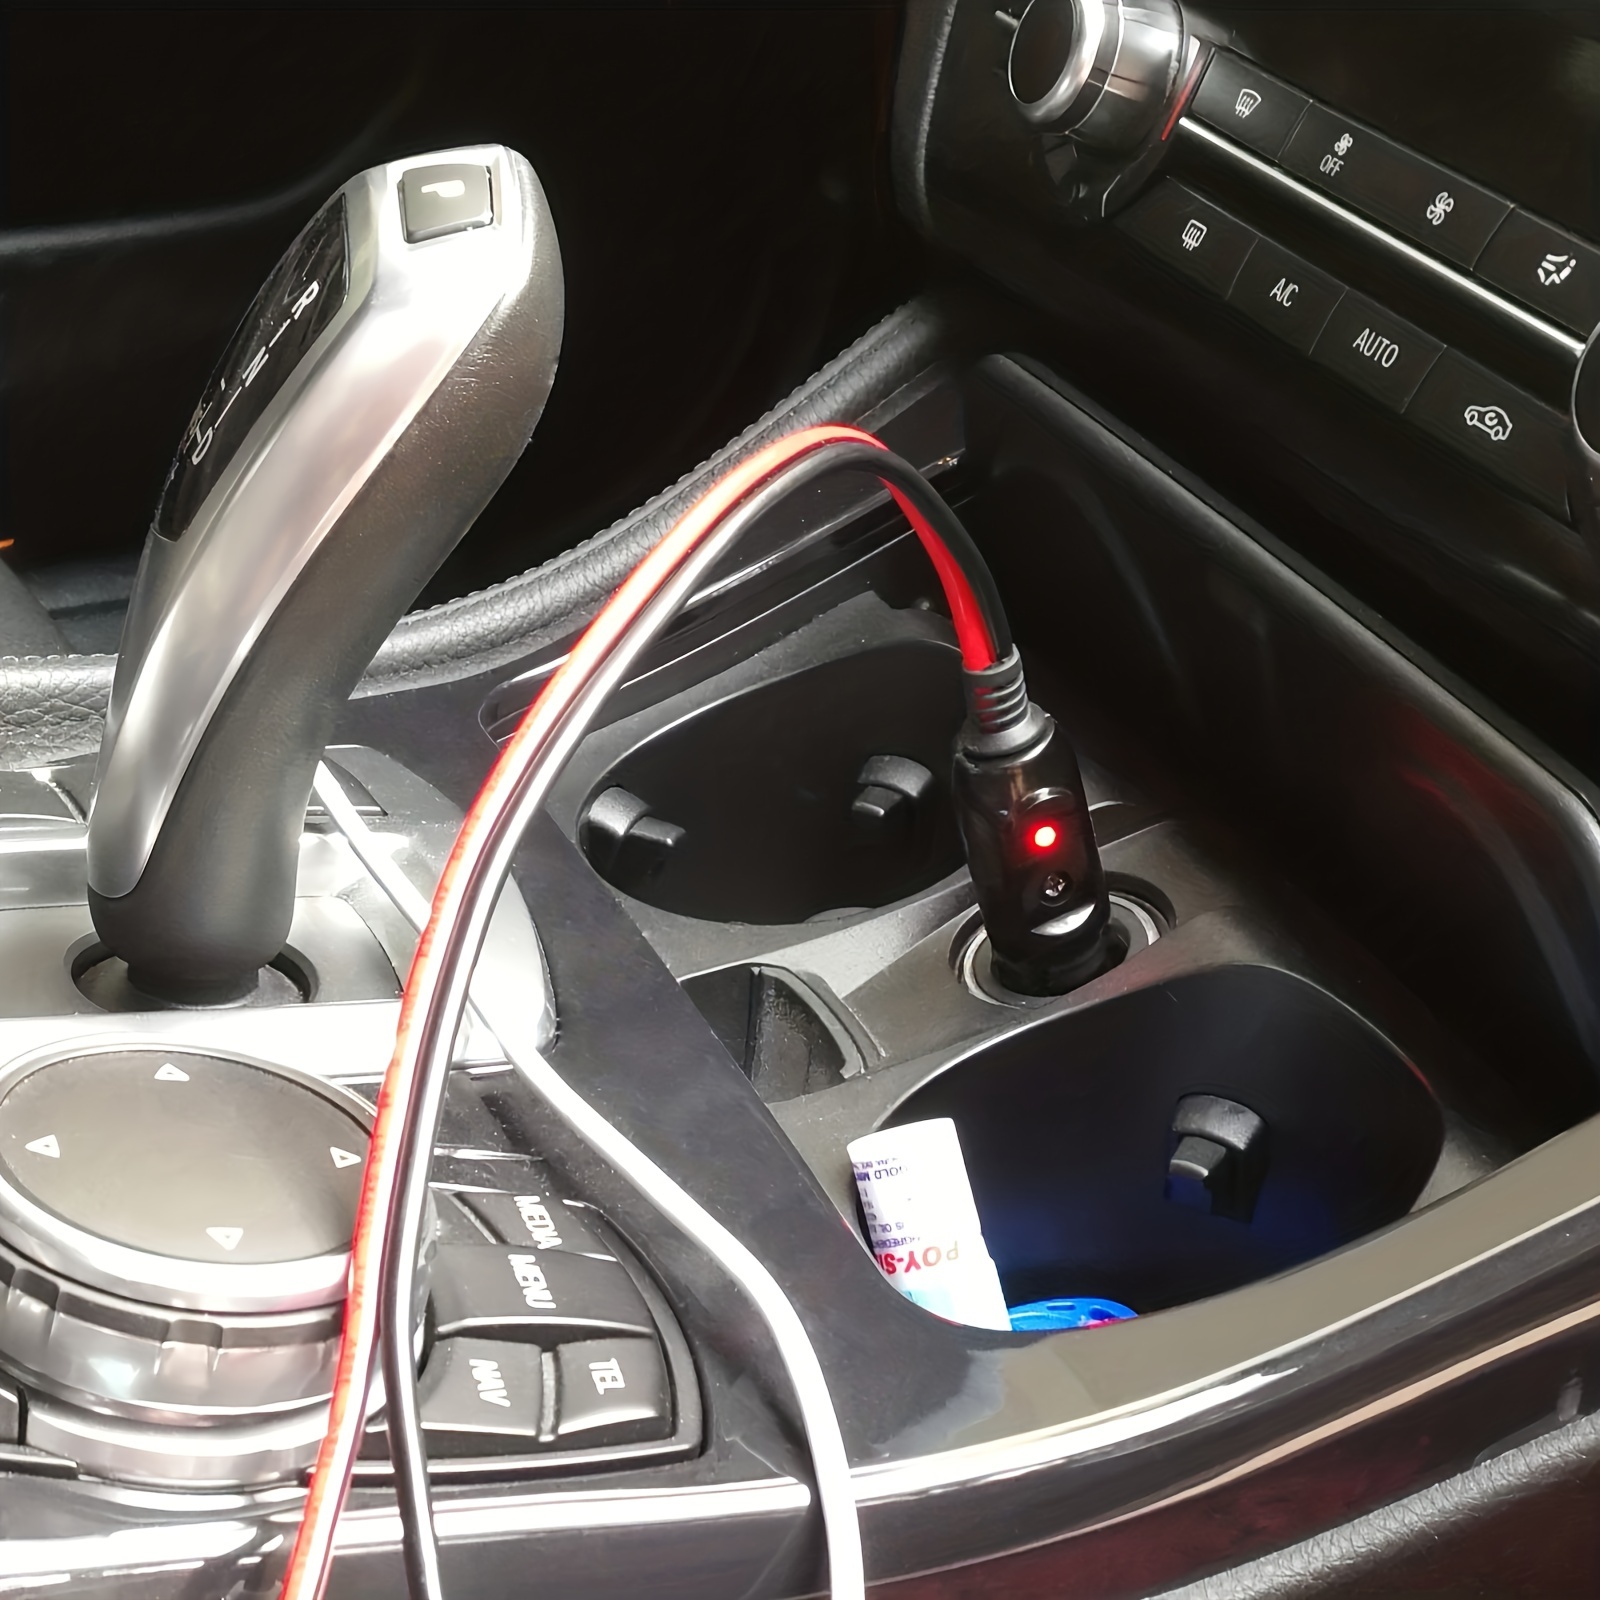 12V Zigarettenanzünder-Stecker Mit Kabel Auto-Netzteil Autozubehör Mit  LED-Licht 15A Sicherung Für Auto Van Fahrzeug Motor